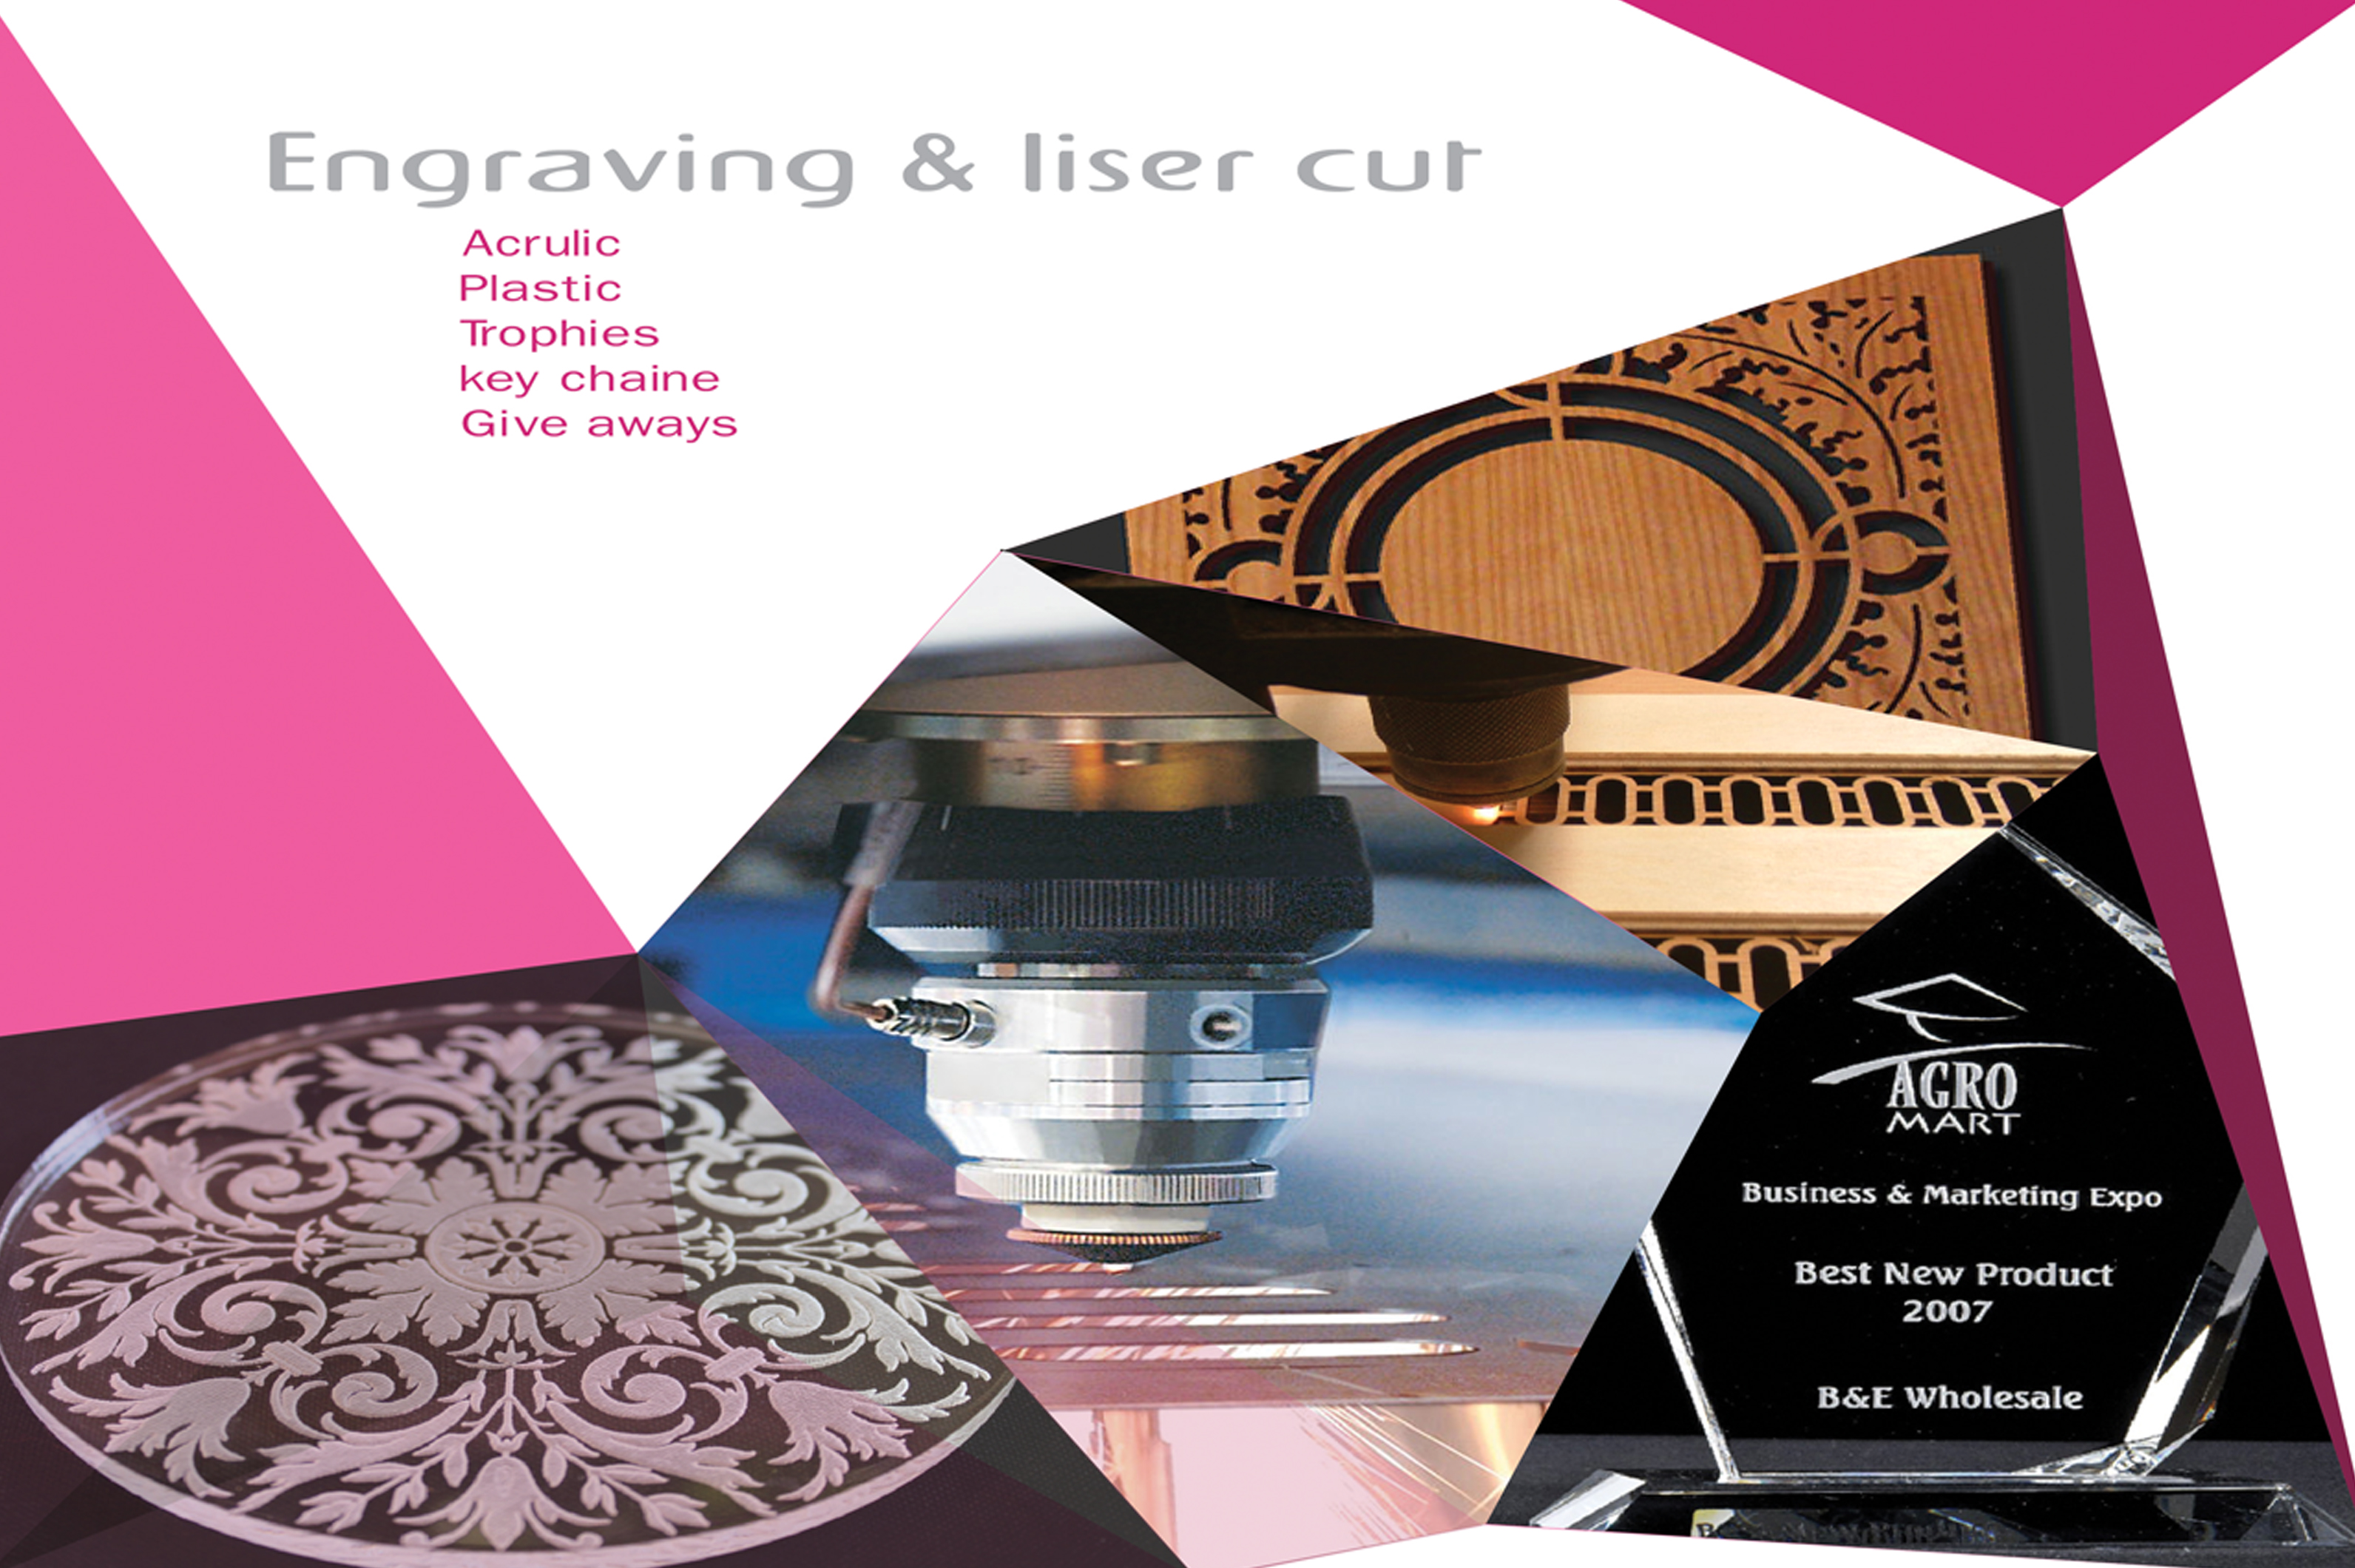 Engraving Liser Cut